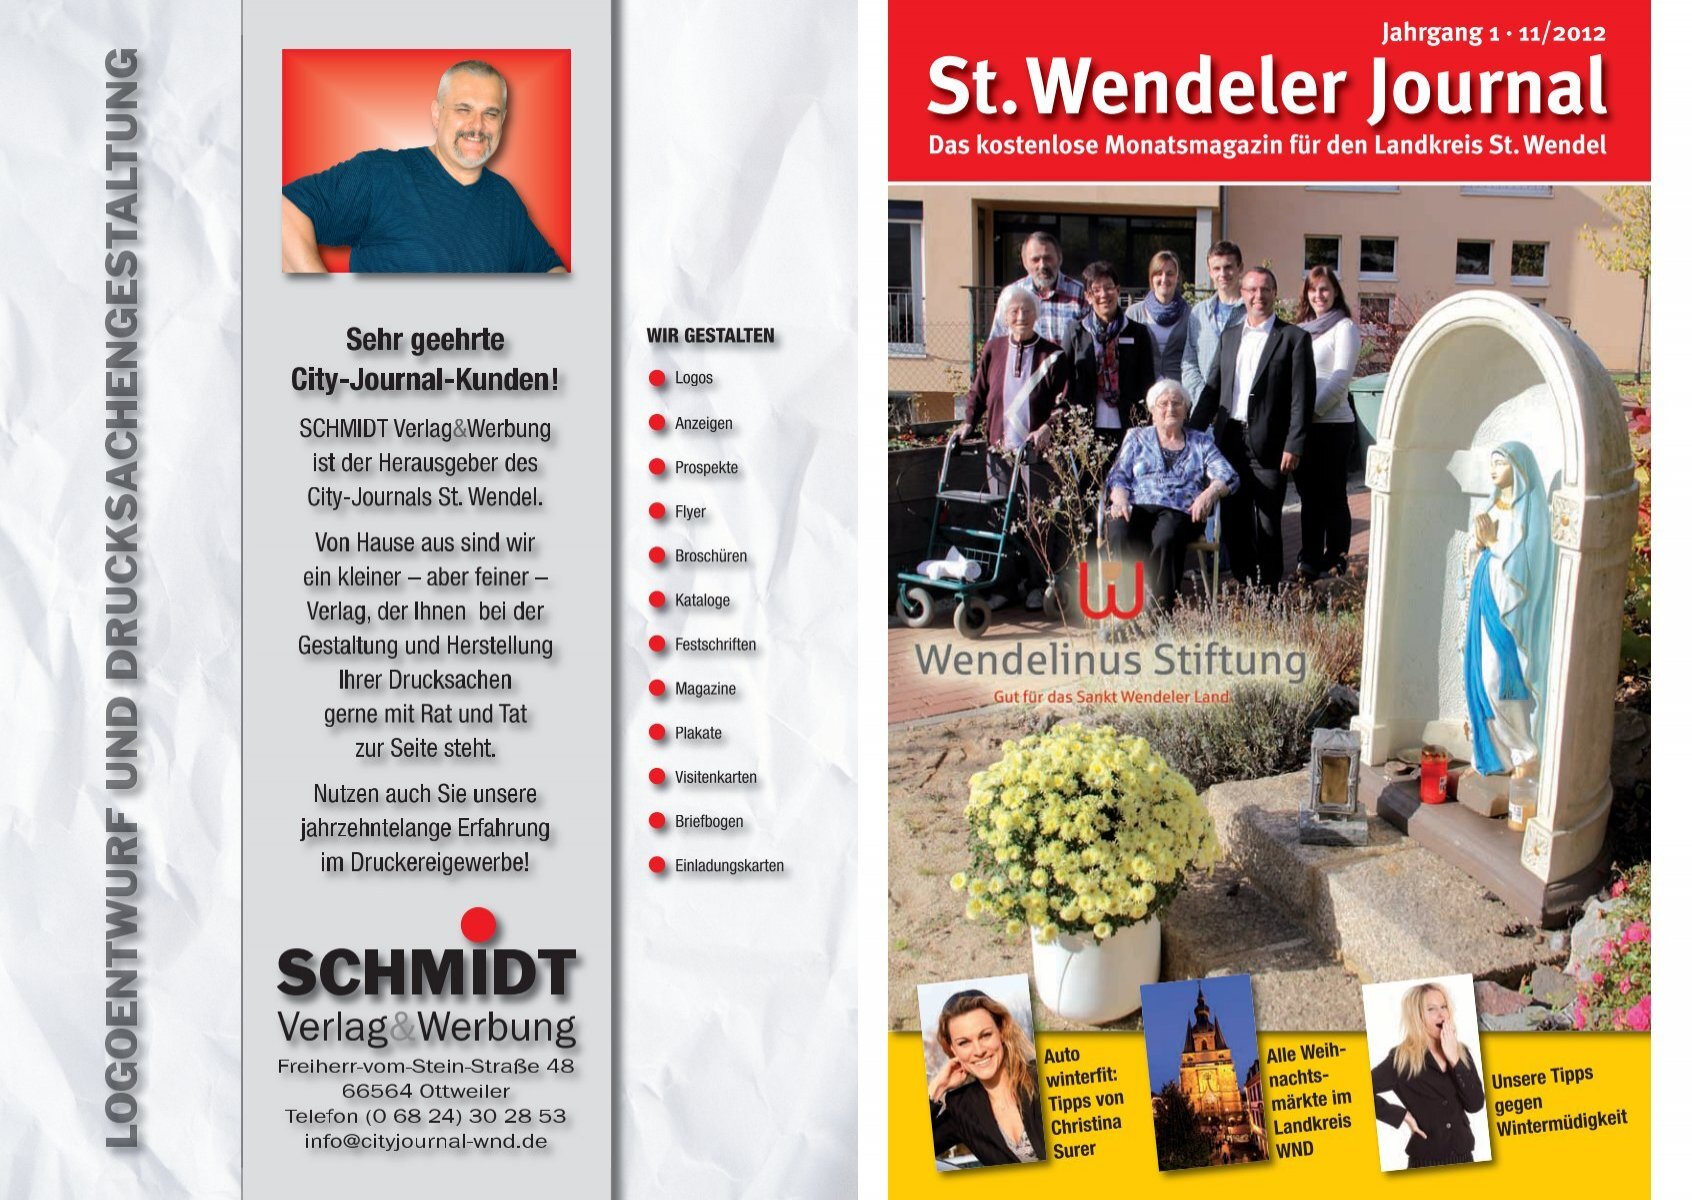 St.Wendeler Journal - City-Journal